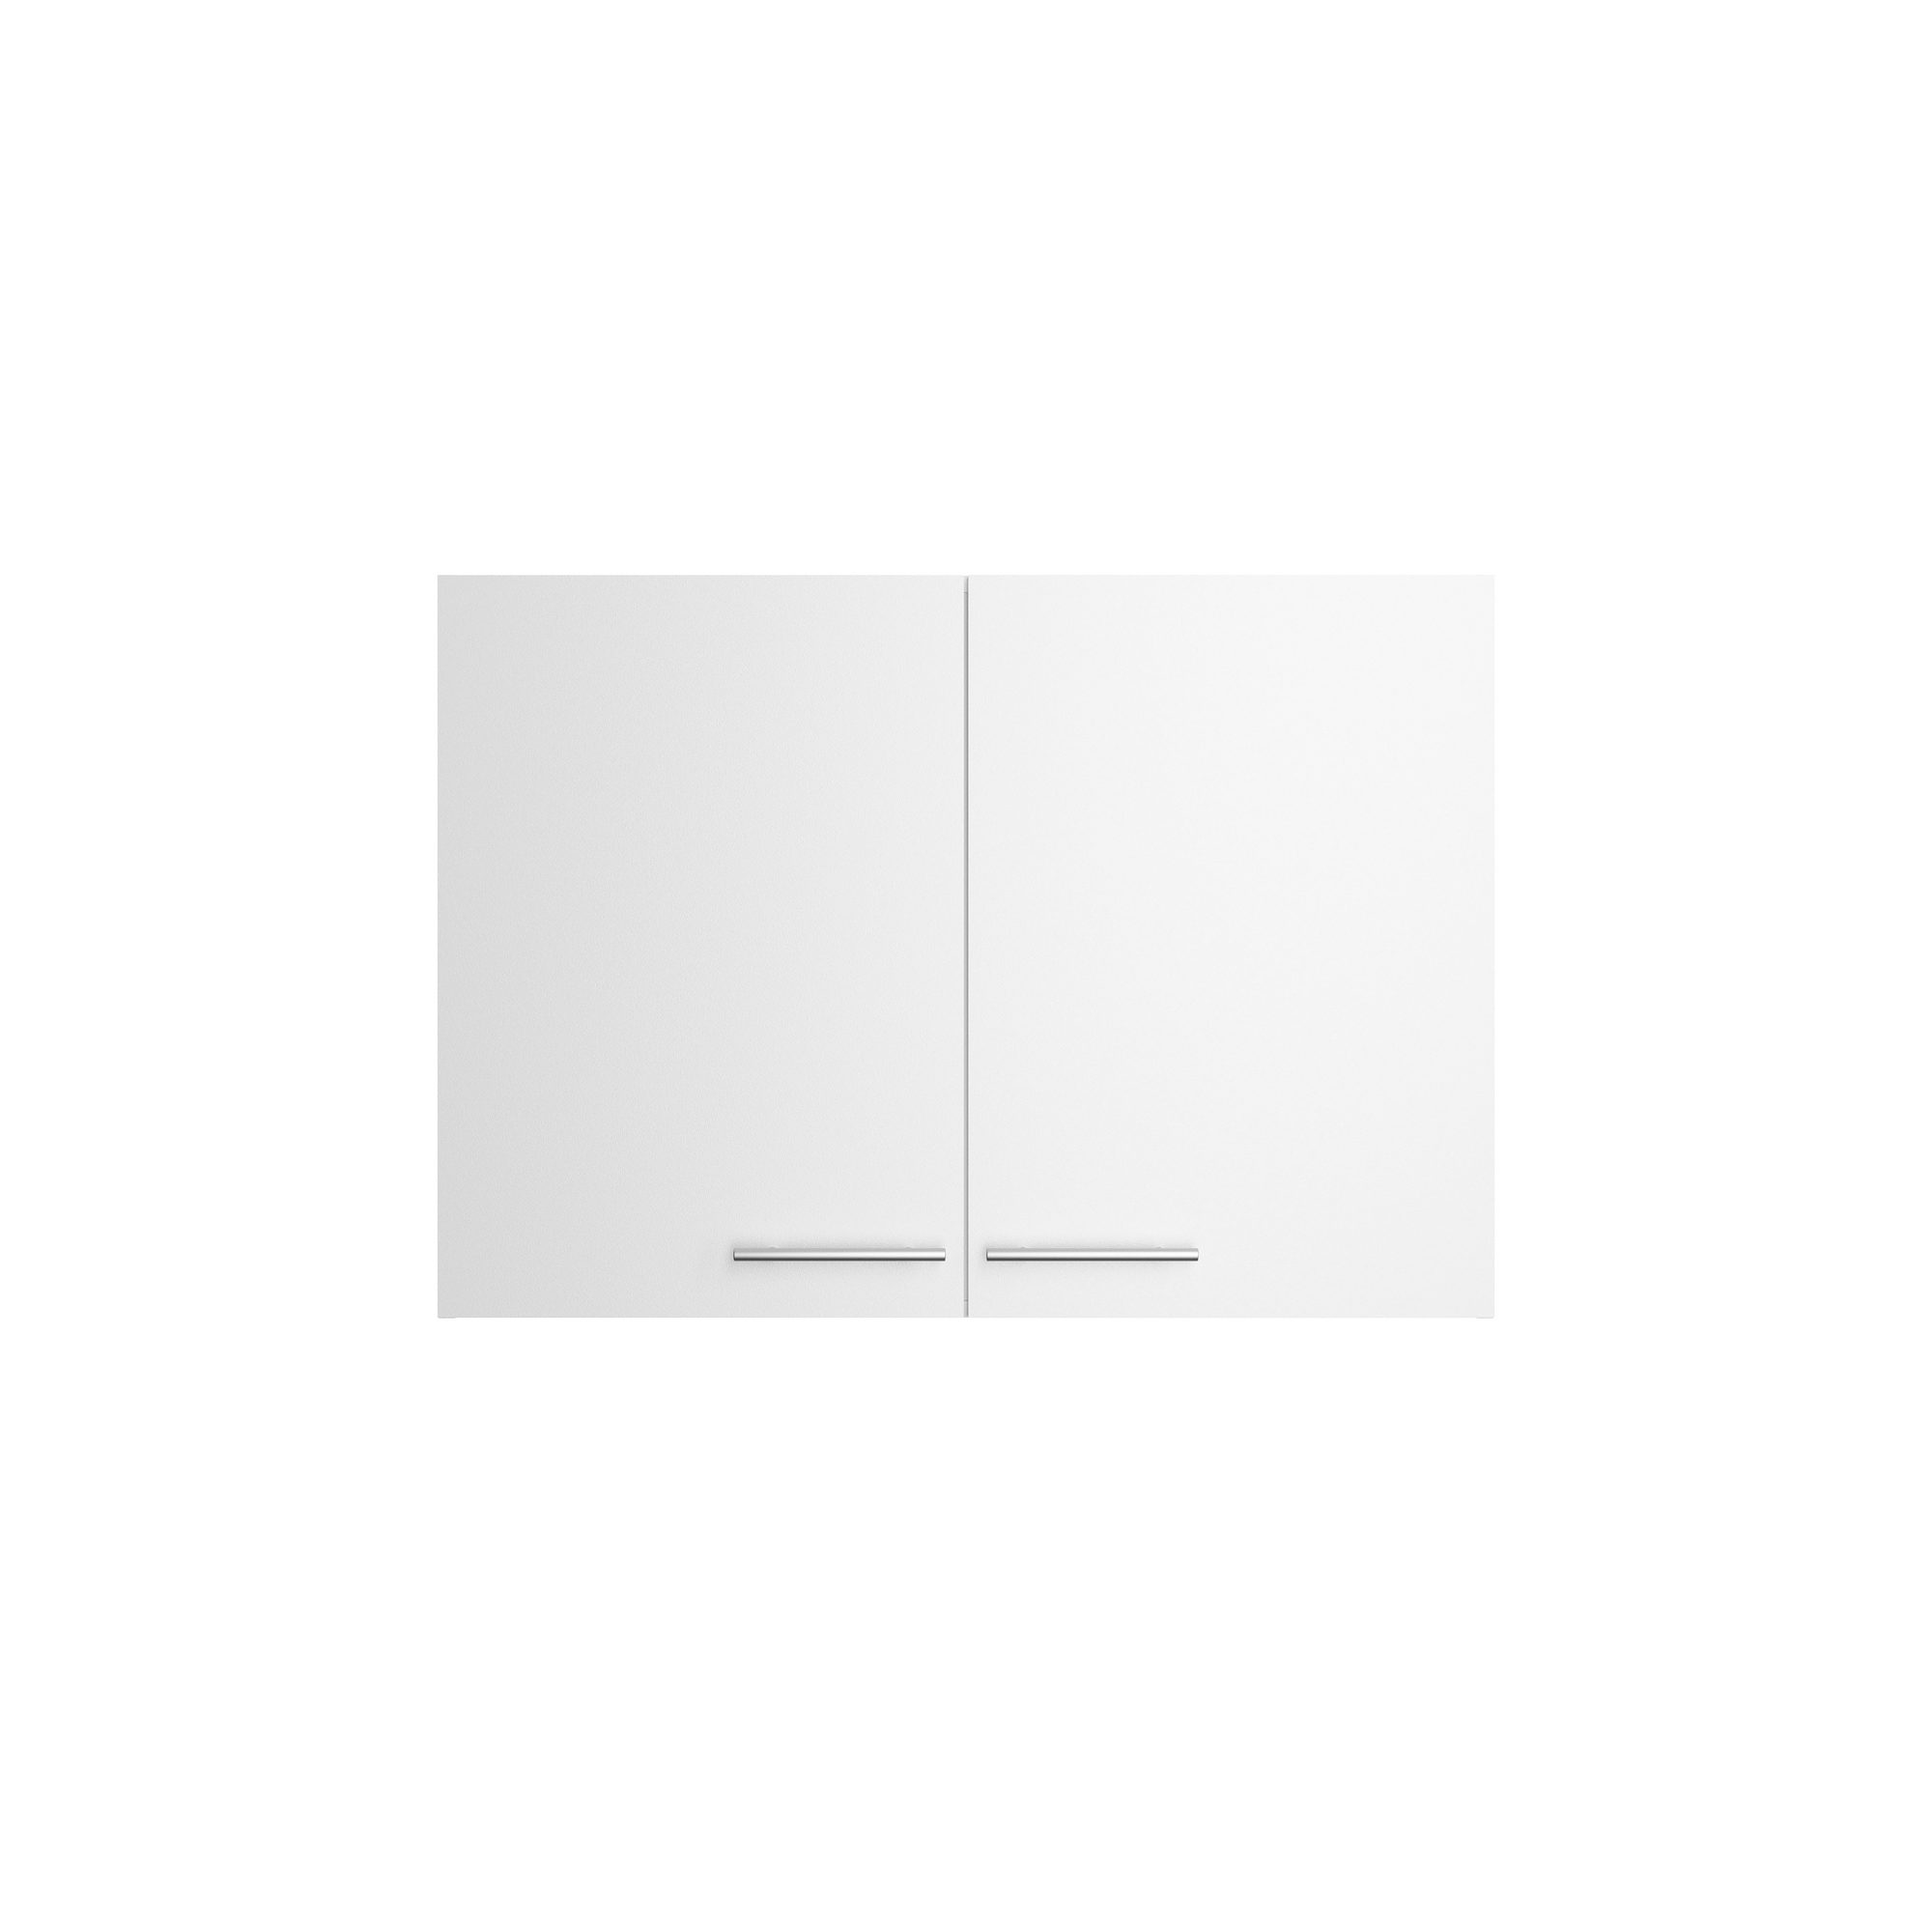 Oberschrank 'Optikomfort Bengt932' weiß 100 x 70,4 x 34,9 cm + product picture